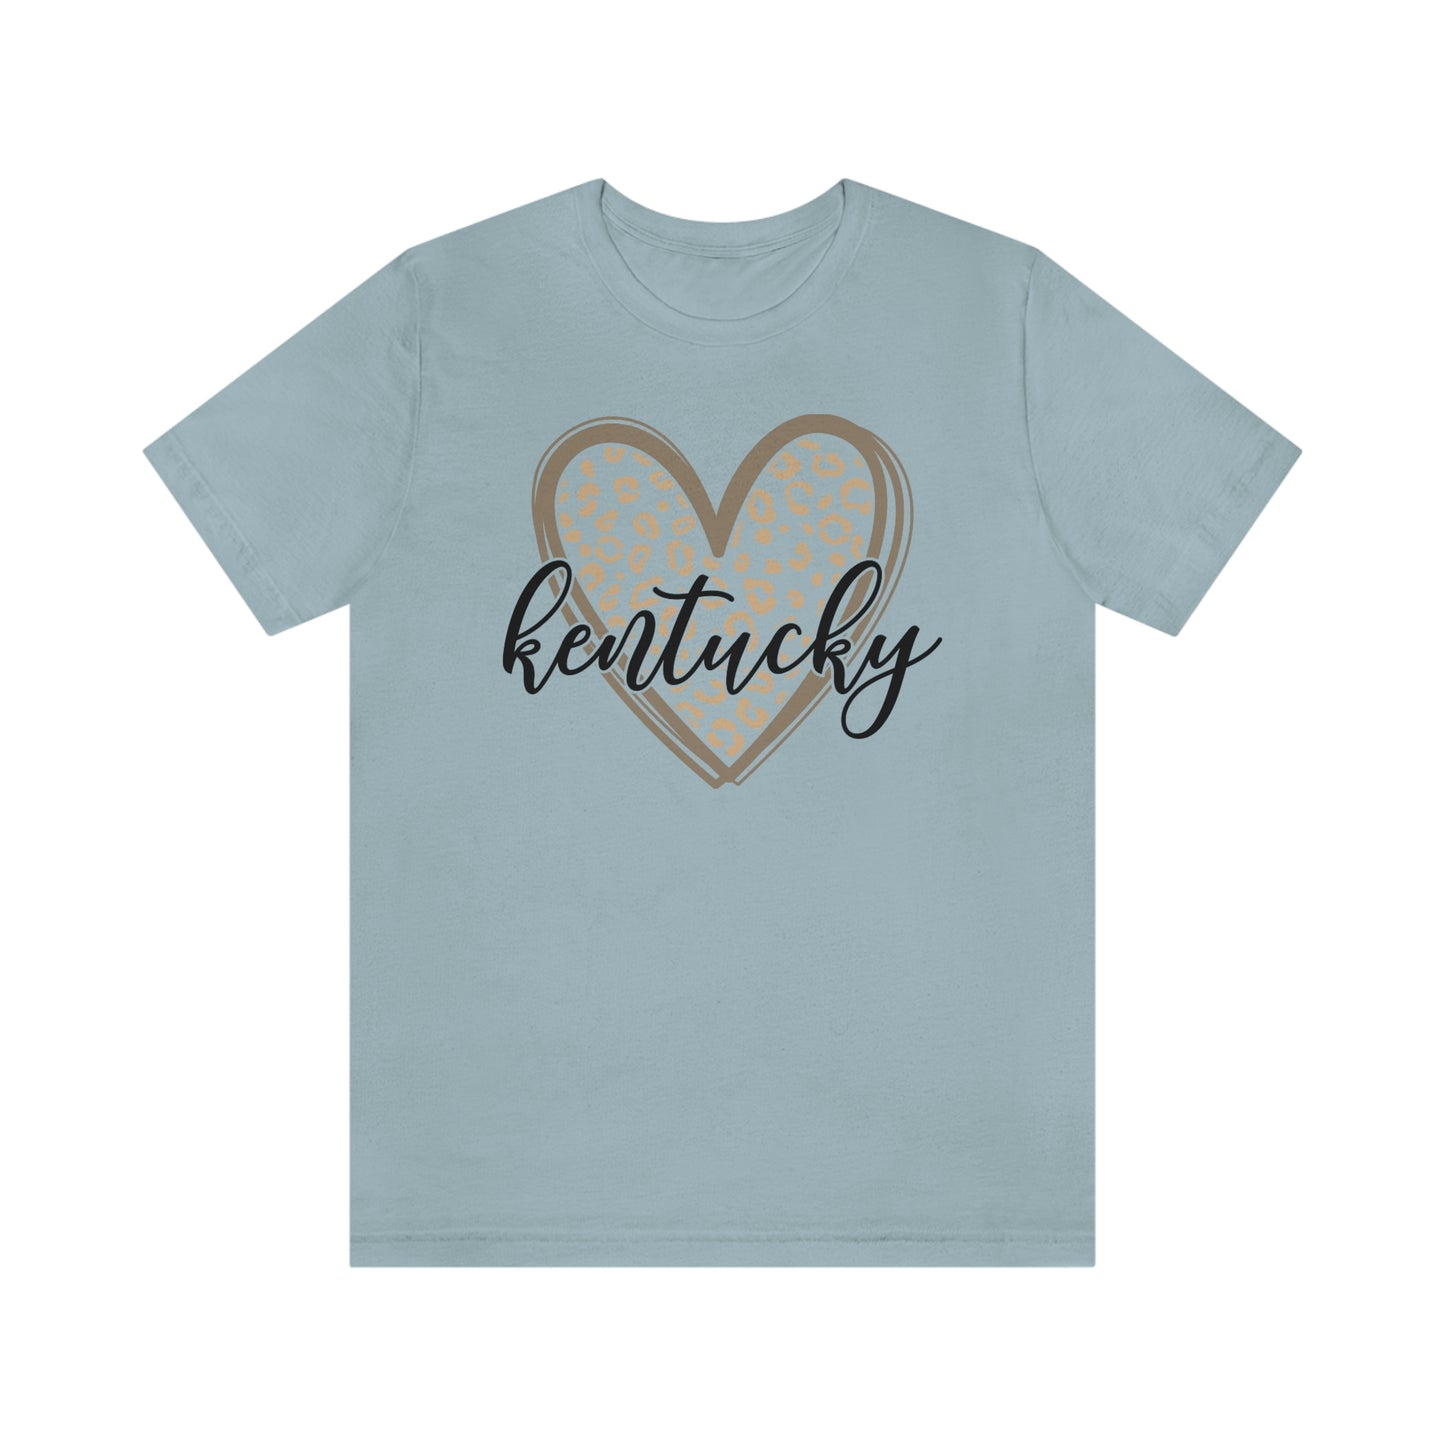 Kentucky Gold Leopard Heart Black Script Short Sleeve T-shirt